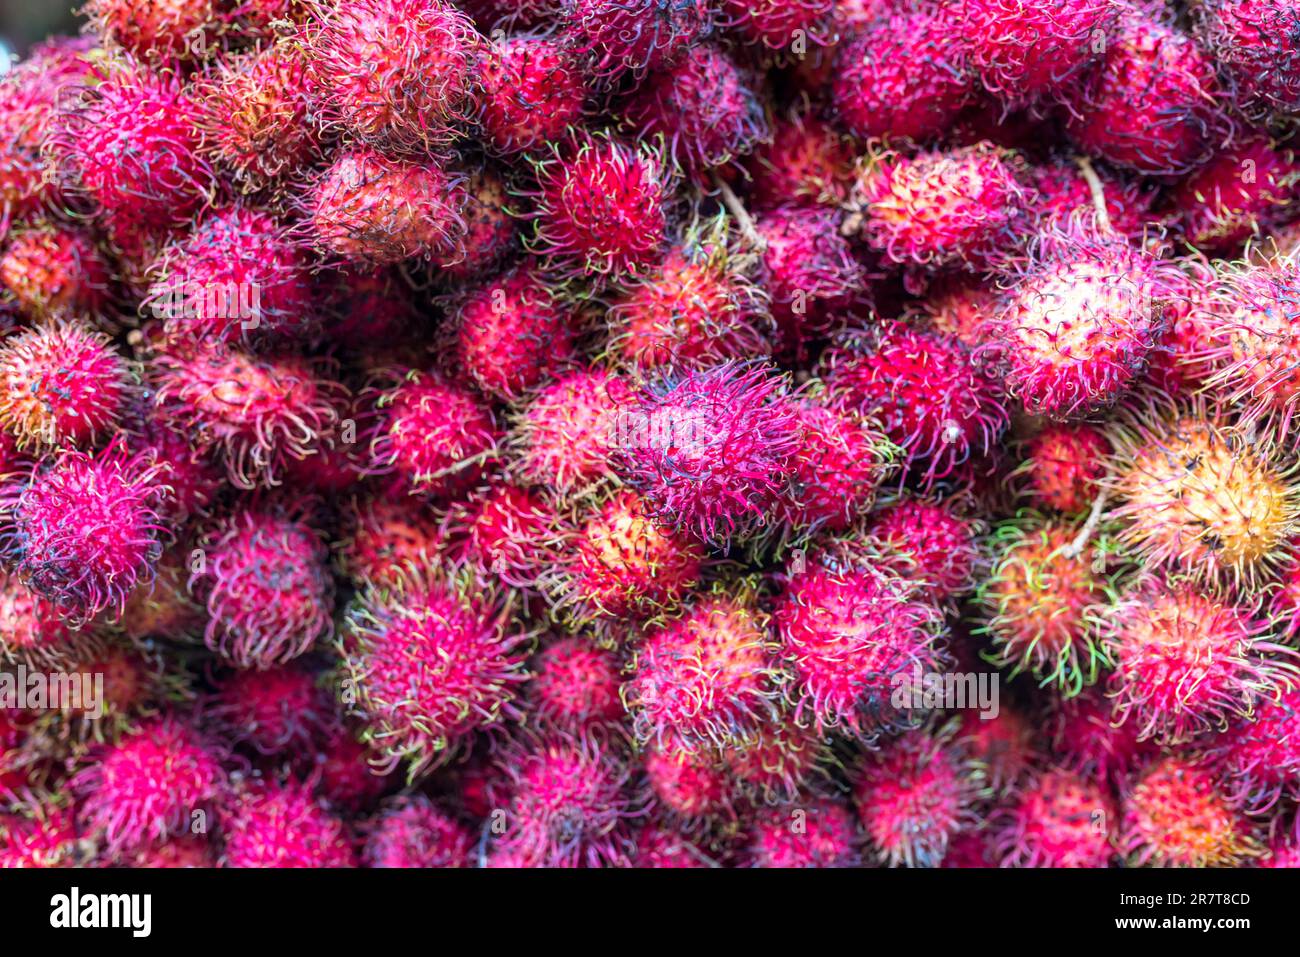 Gros plan de fruits de ramboutan d'un greengrocer dans un marché de la Chinatrust de Kuala Lumpur. Le fruit délice est originaire d'Asie du Sud-est Banque D'Images